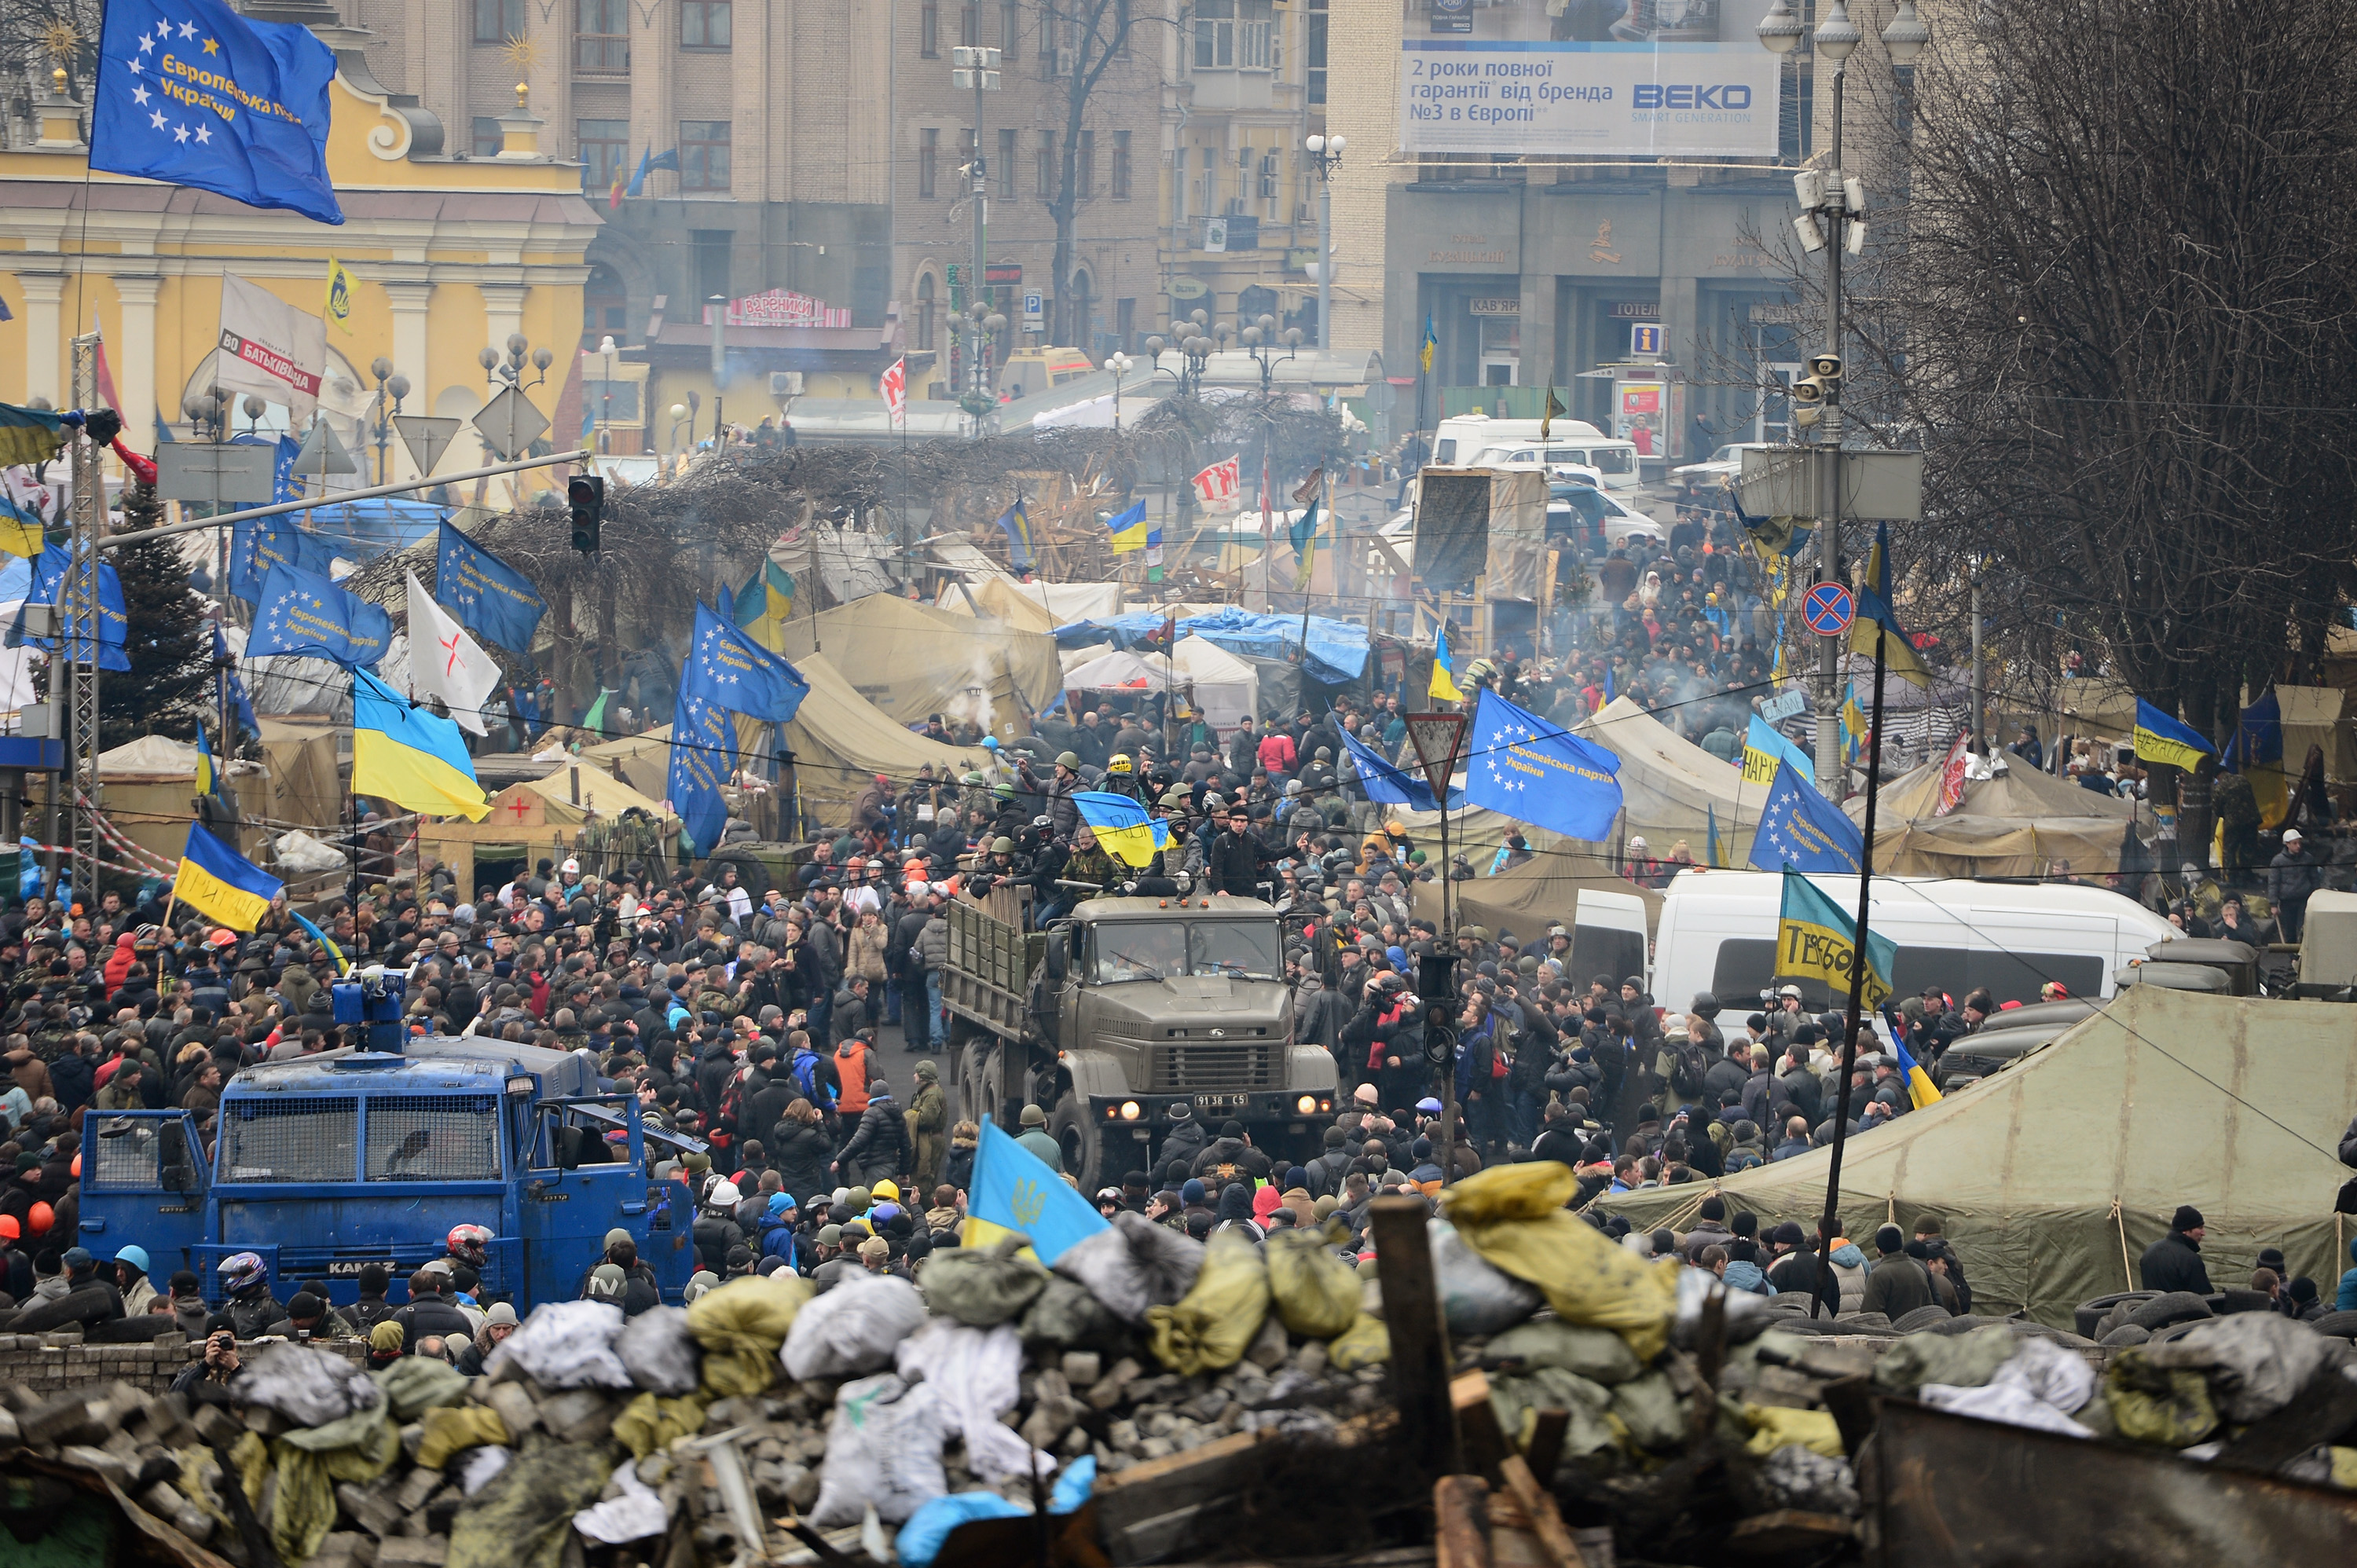 Misterul disparitiei lui Viktor Ianukovici. Ce ipoteze exista despre locul in care se afla fostul presedinte ucrainean - Imaginea 6